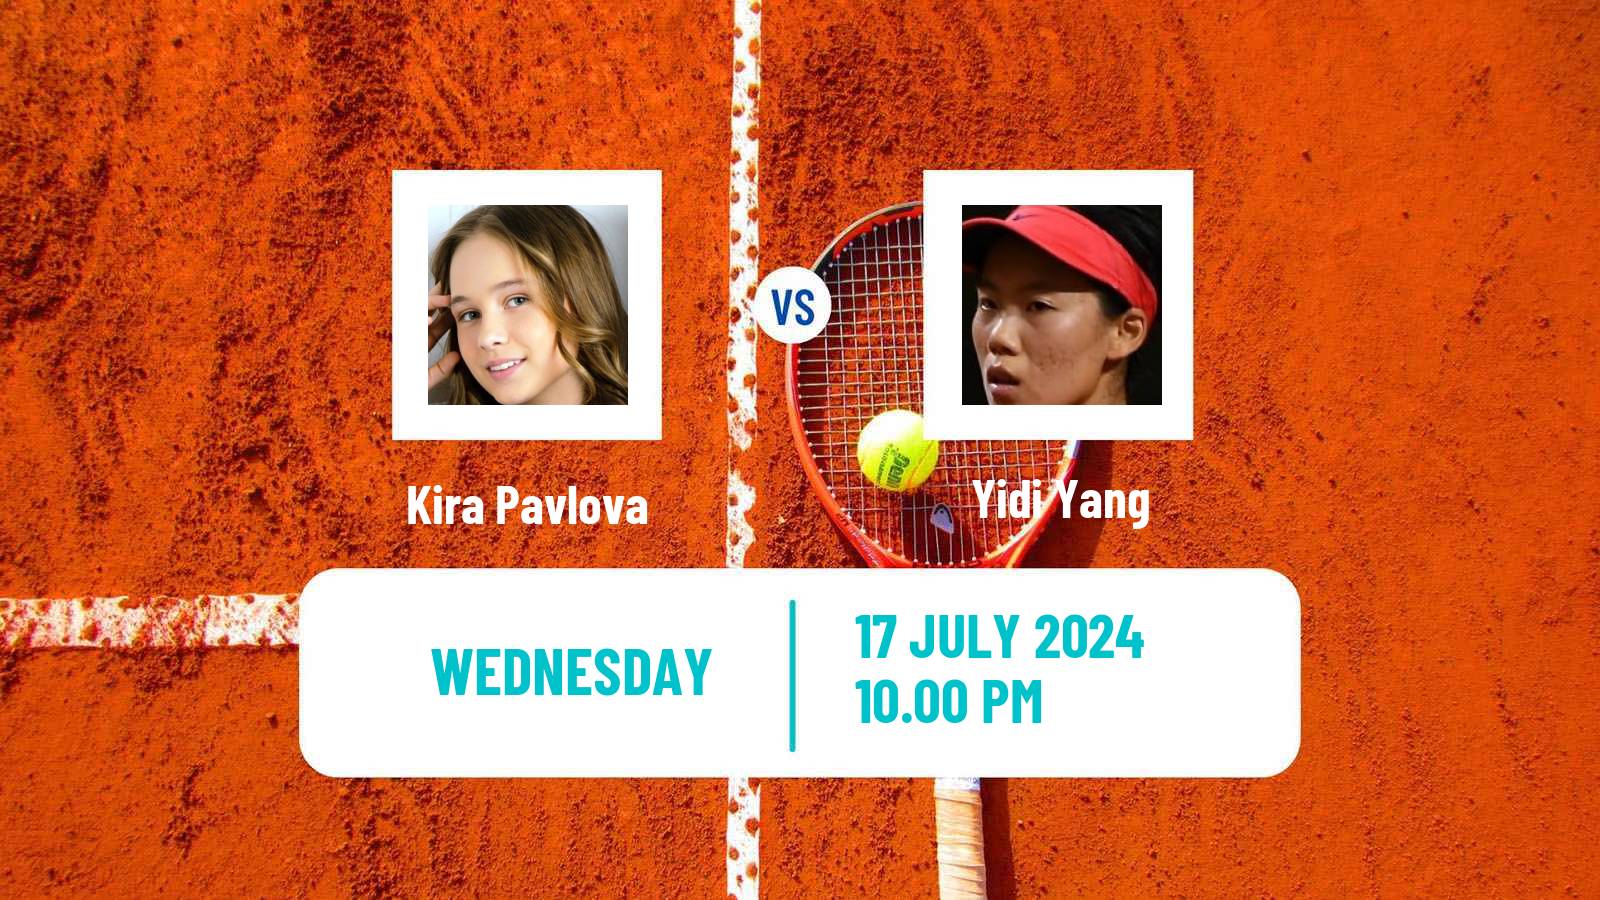 Tennis ITF W35 Tianjin 2 Women Kira Pavlova - Yidi Yang